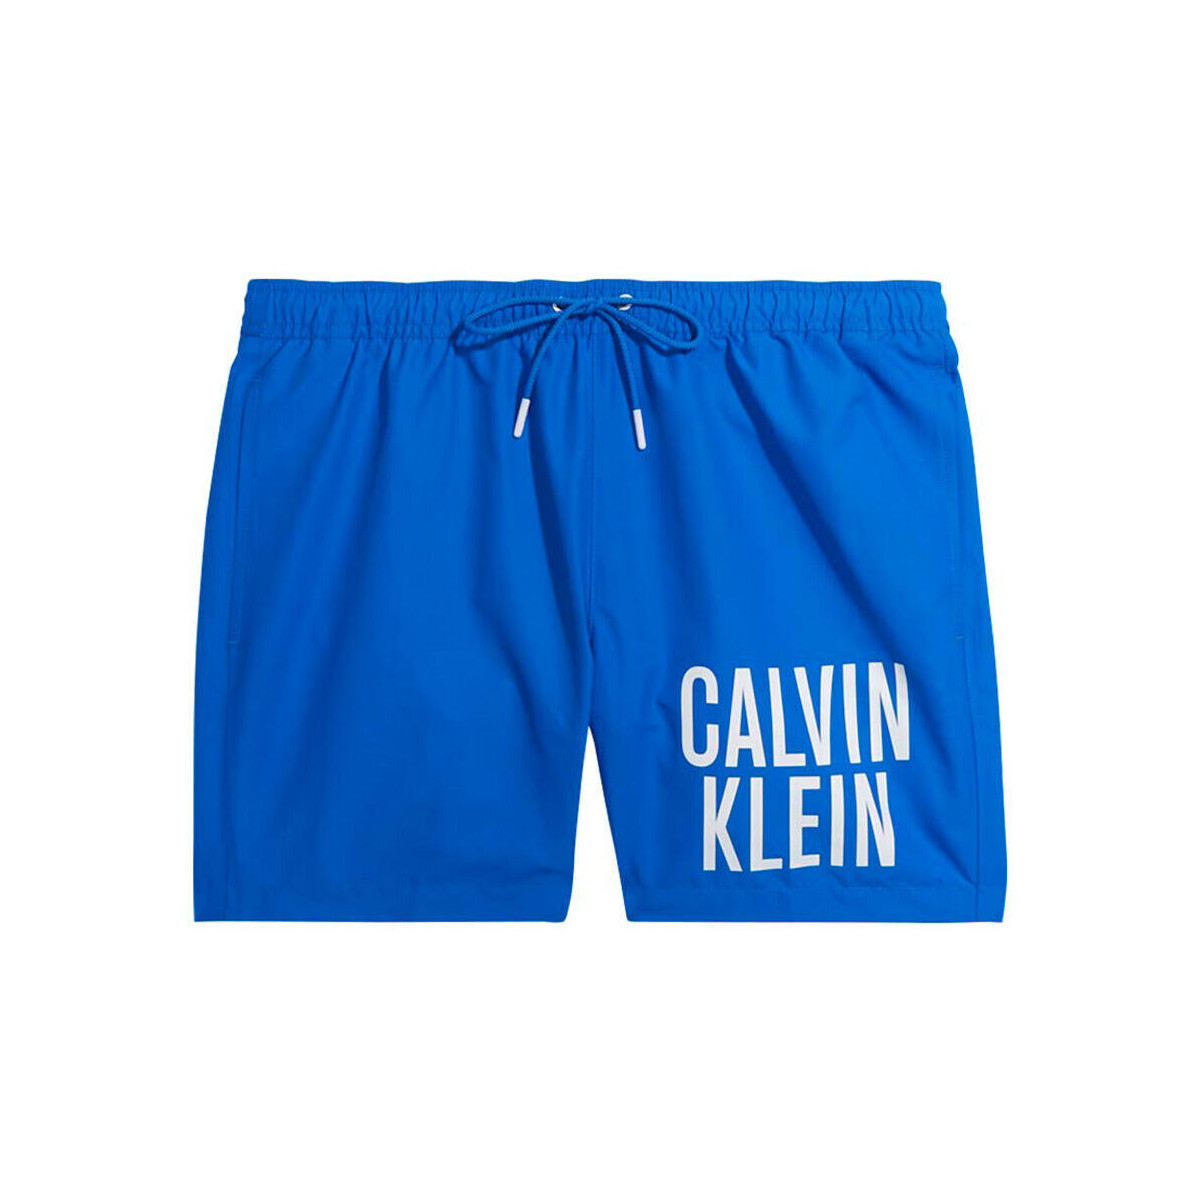 Textil Muži Kraťasy / Bermudy Calvin Klein Jeans - km0km00794 Modrá